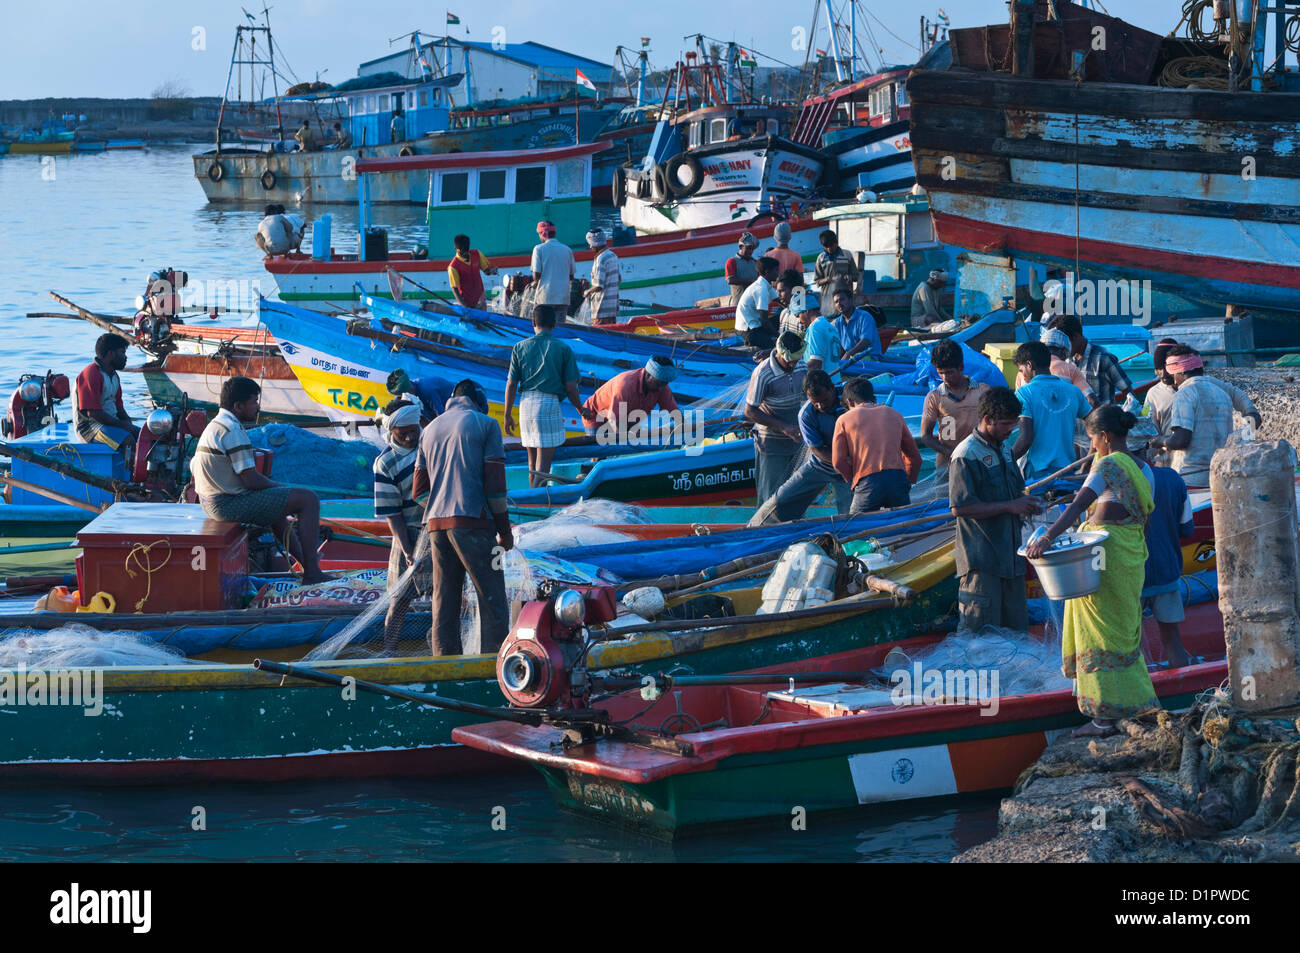 Des bateaux de pêche à l'aube du village de pêche de Nagapattinam Tamil Nadu Inde Banque D'Images